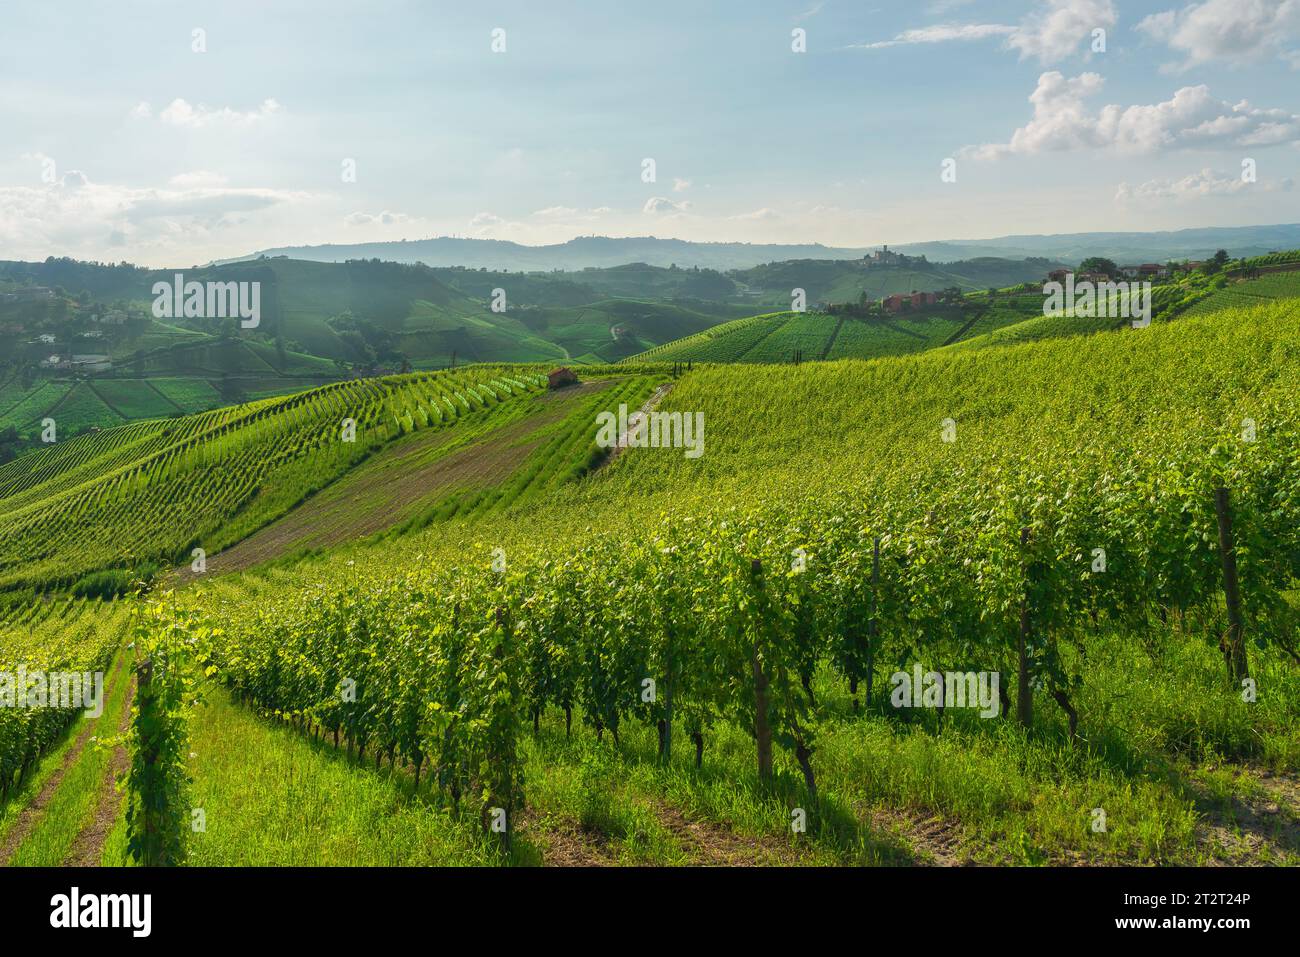 Paysage des vignobles de Langhe et village de Castiglione Falletto au sommet de la colline, site classé au patrimoine mondial de l'UNESCO, région du Piémont, Italie, Europe. Banque D'Images